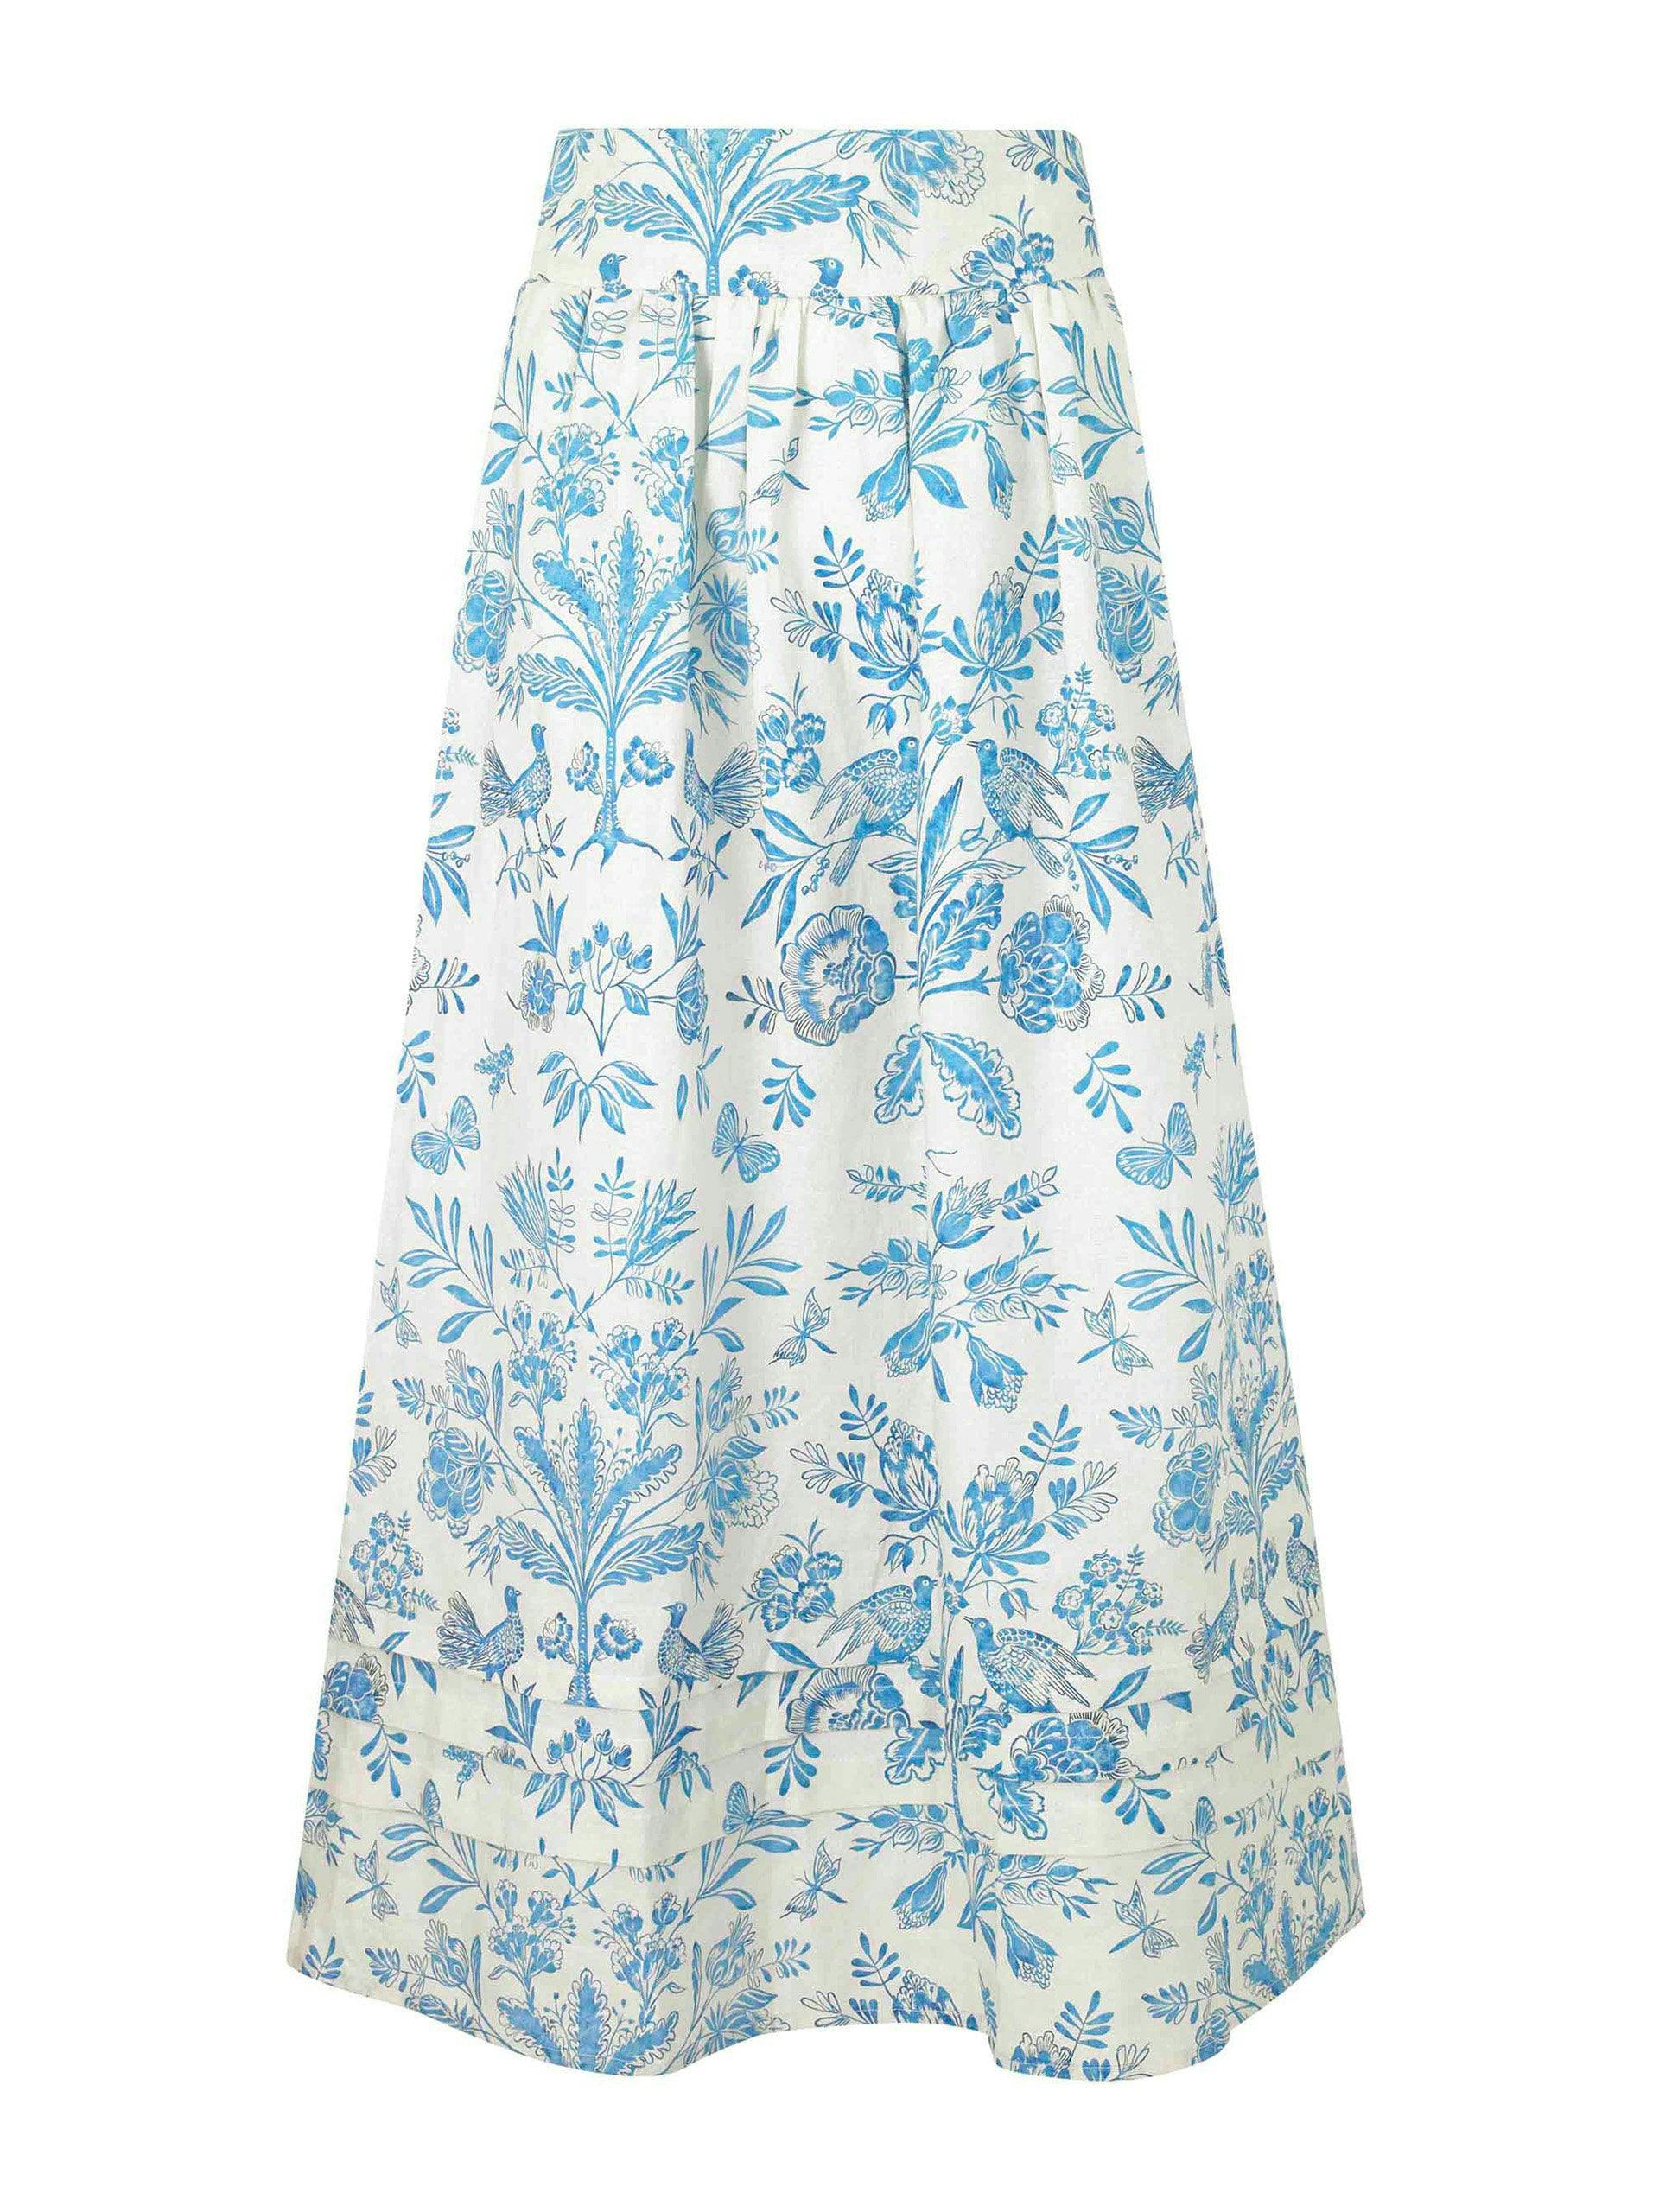 Blue and white Bushka skirt